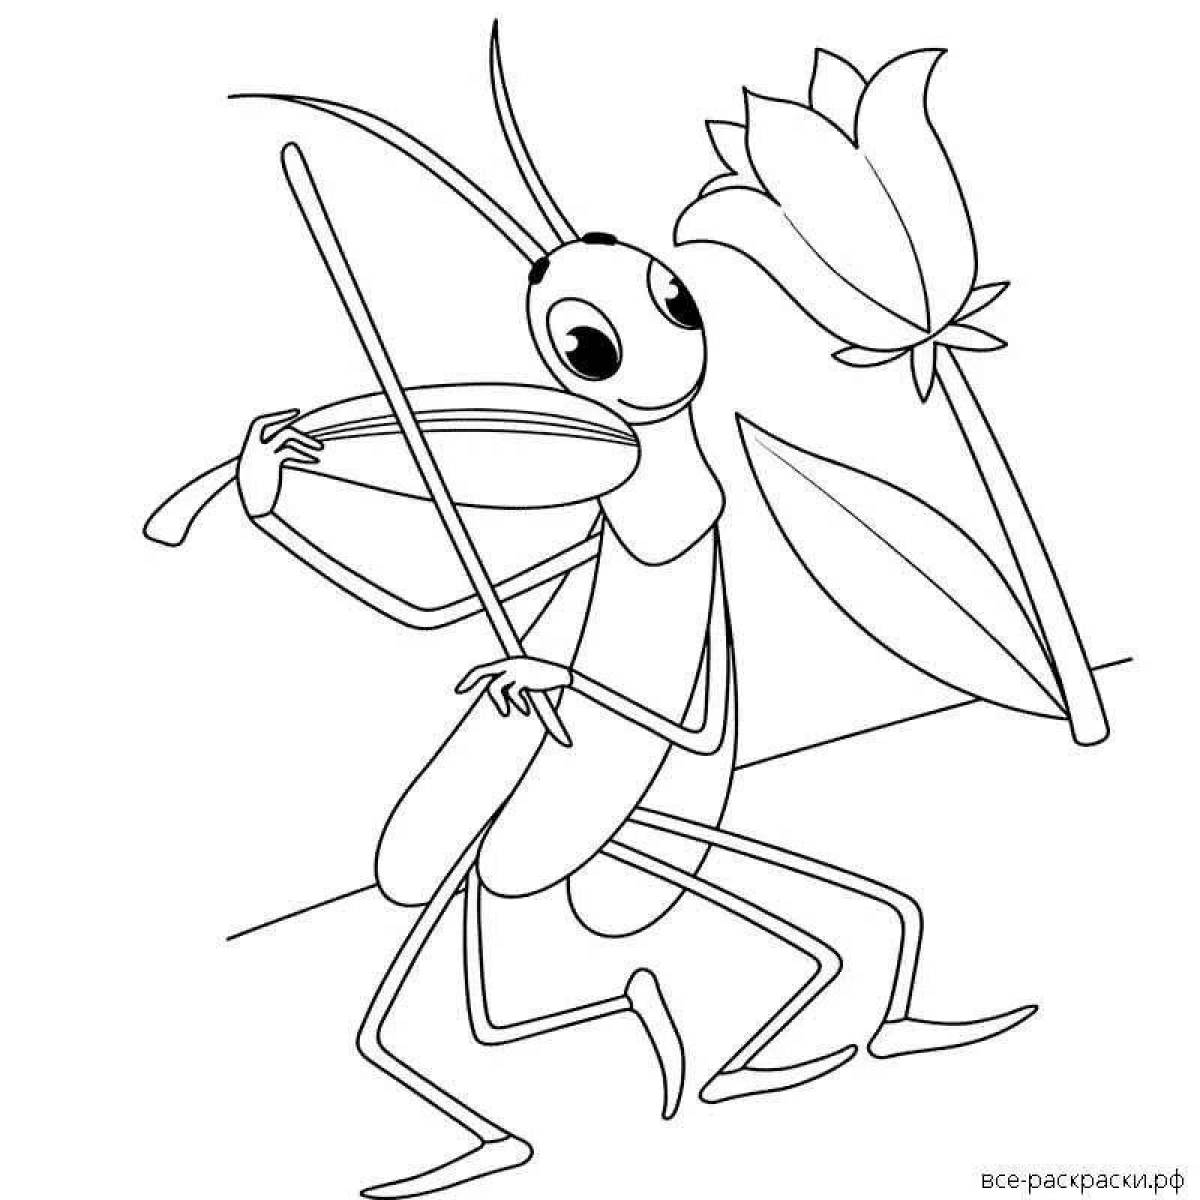 Grasshopper for kids #7